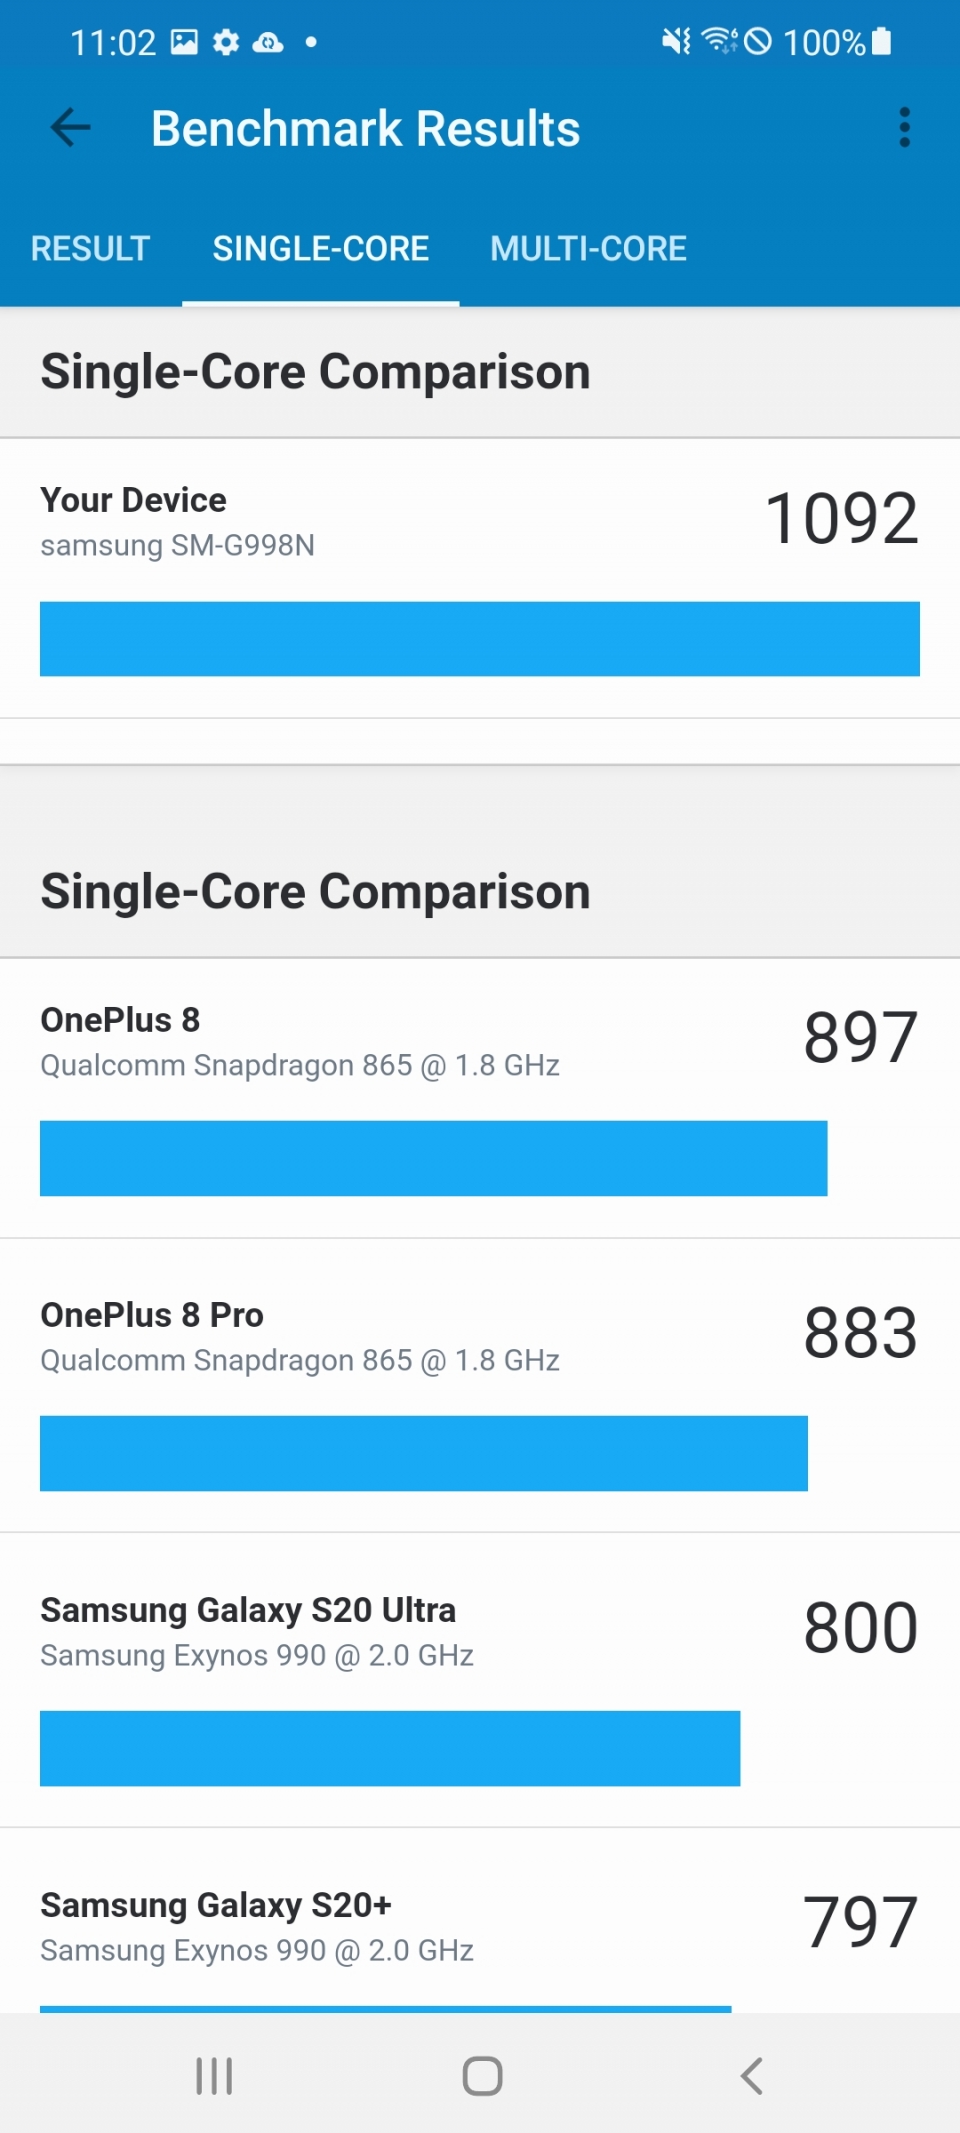 GeekBench 5 싱글 코어 벤치마크 결과는 1092점으로 나타났다. 전작의 엑시노스 990보다 36.5% 높은 수준이다.